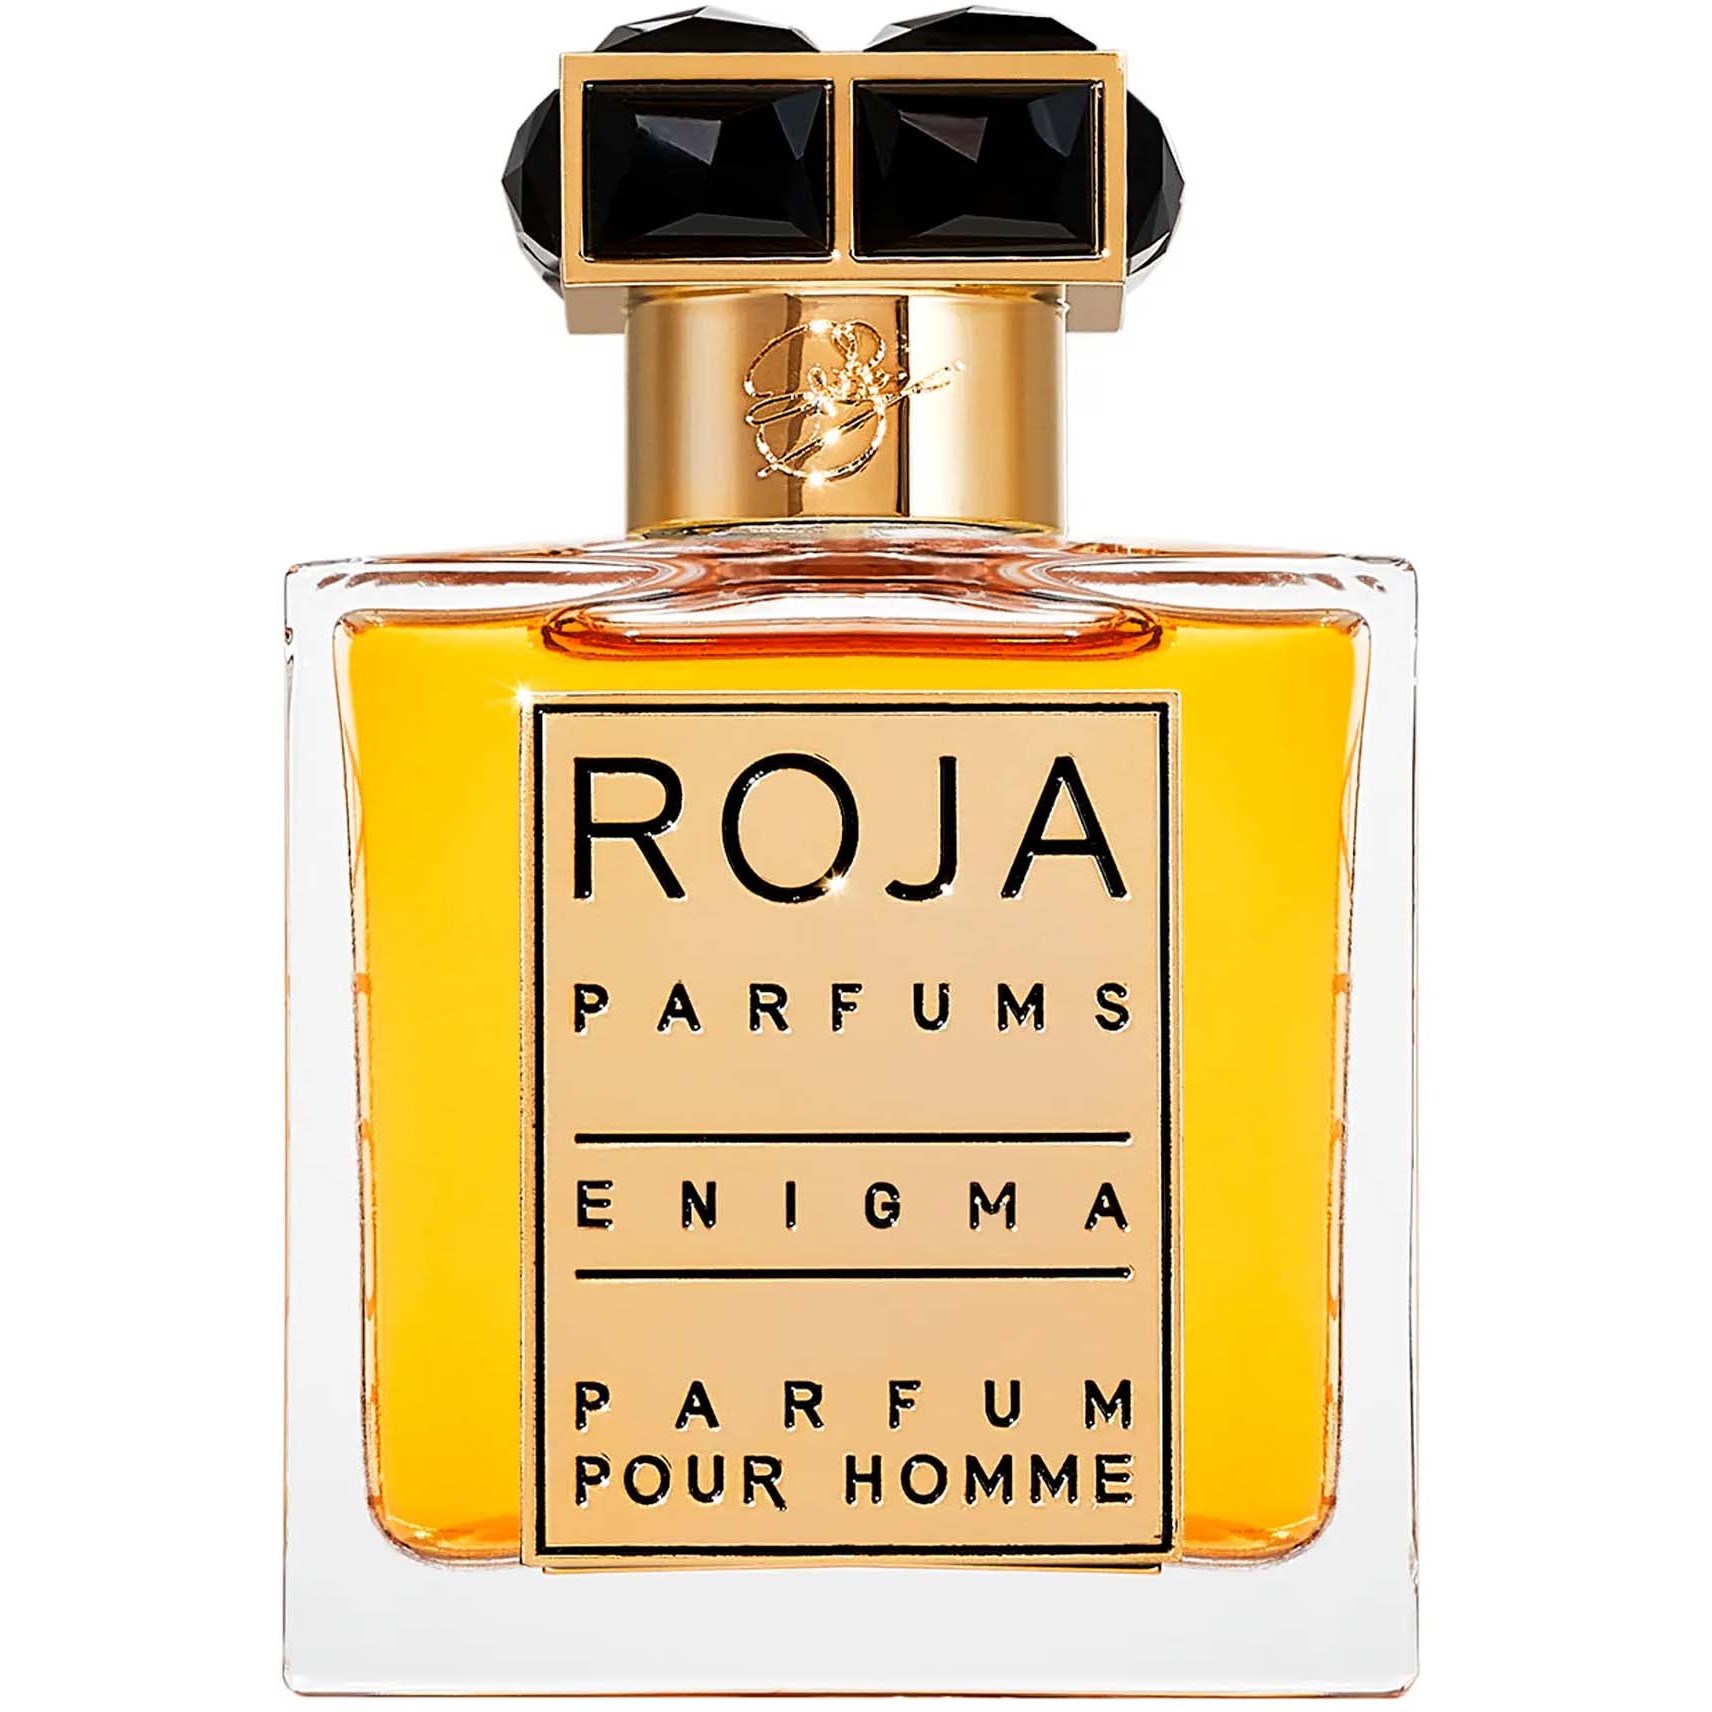 Zdjęcia - Perfuma męska Roja Parfums Enigma Pour Homme Parfum 50 ml 